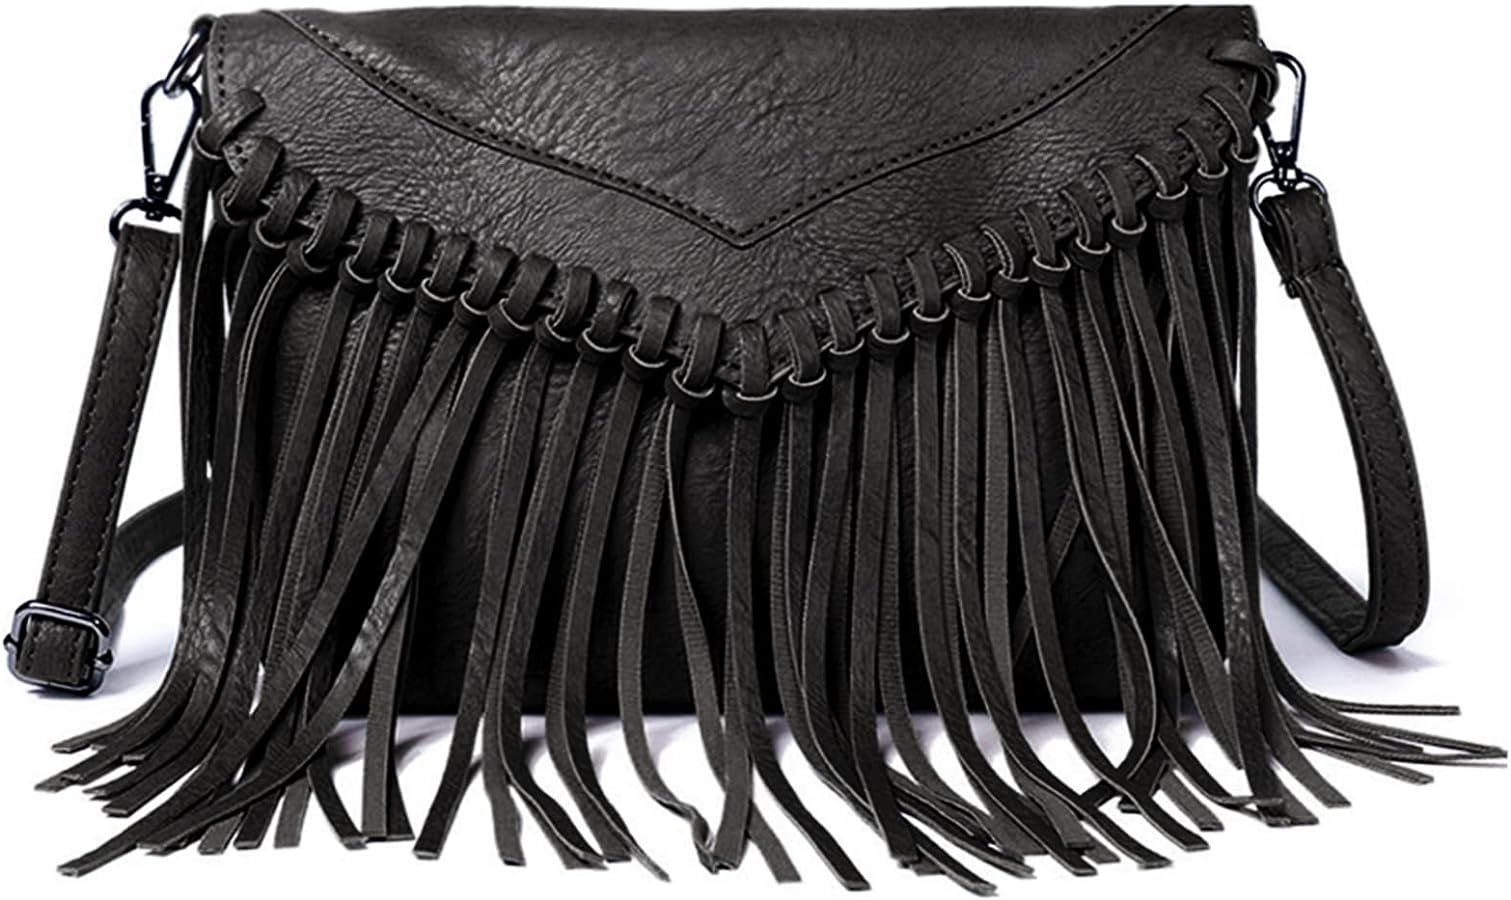 Vintage Fringe Purse Fringe Hobo Bags for Women Vegan Leather Tassel Hippie Crossbody Bag | Amazon (US)